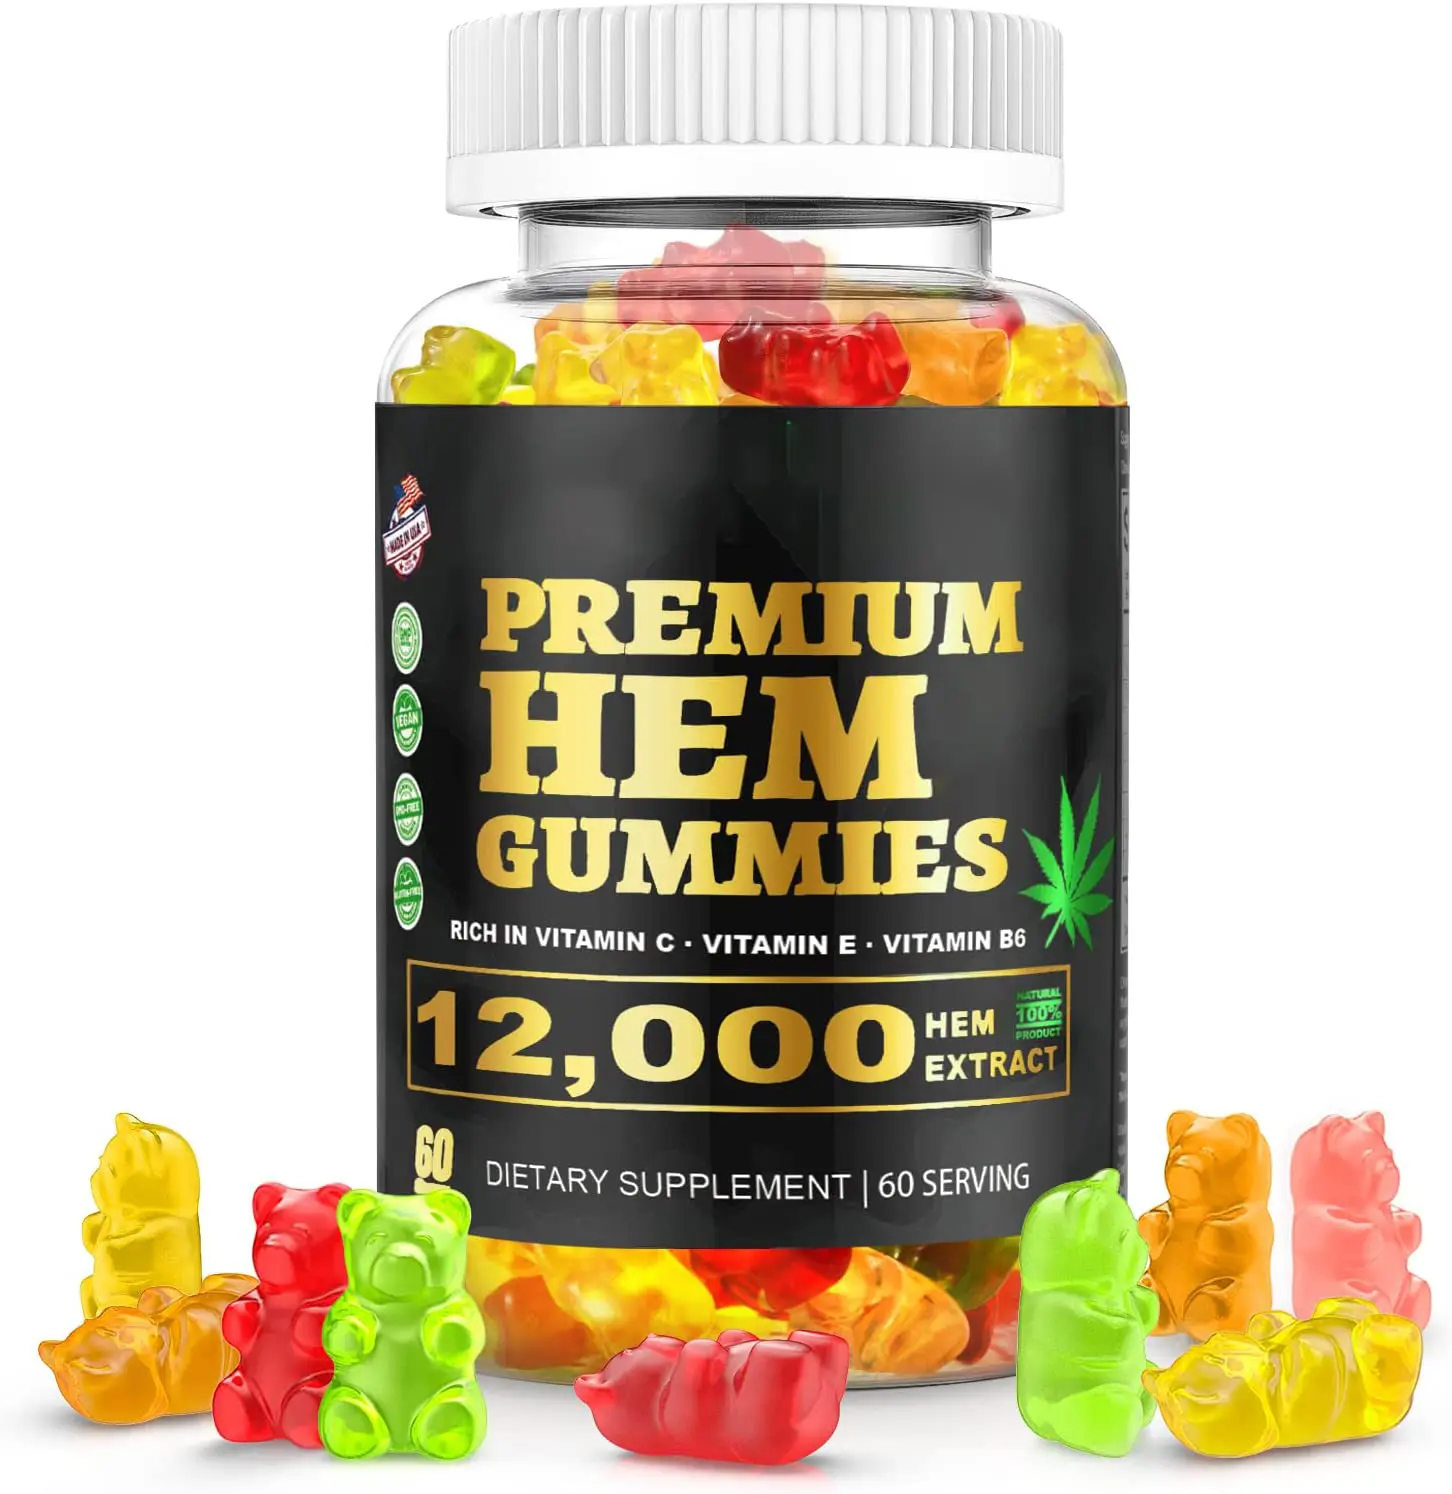 Premium Hem Gummies Pure Natural 12000 mg Rico en vitamina C, E y B6 Suplemento dietético para el cerebro Mejora la memoria y la atención